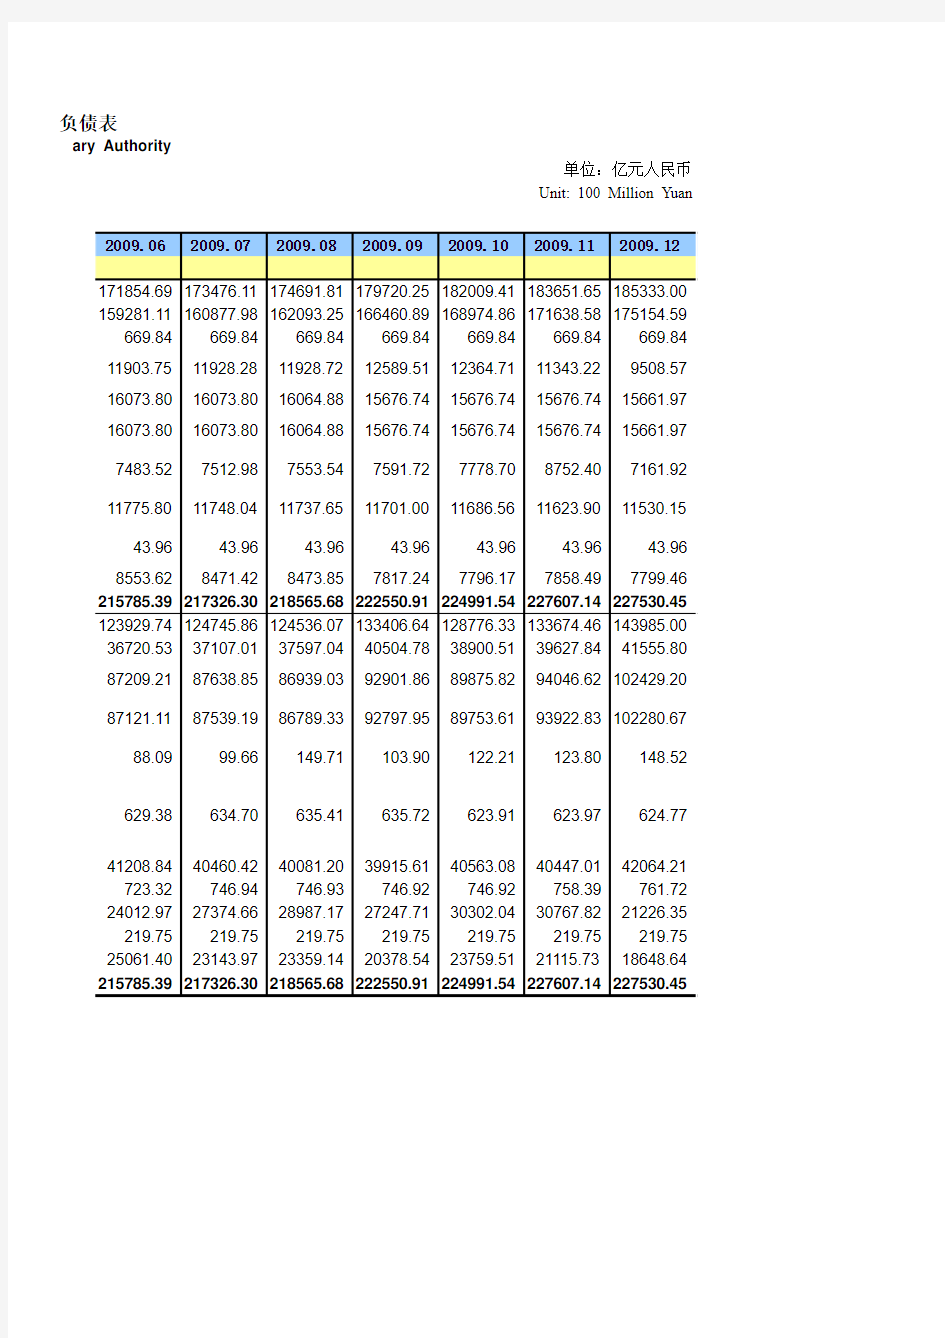 2009年度人民银行资产负债表